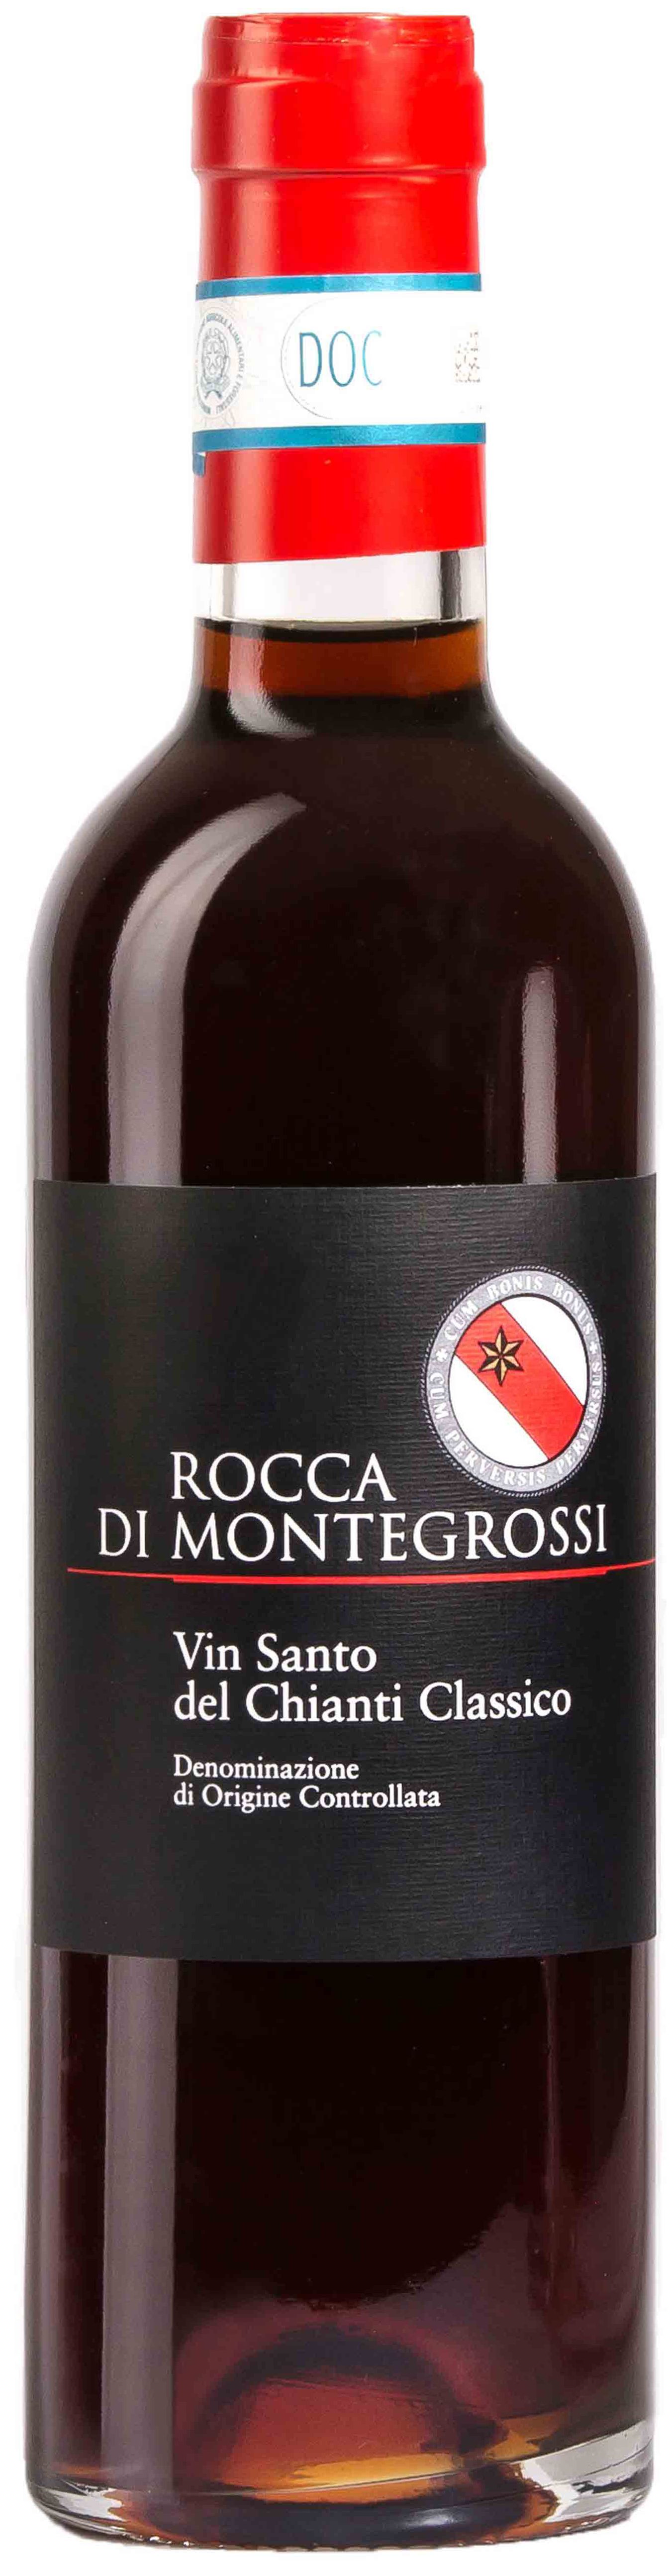 Rocca Di Montegrossi, Vin Santo Del Chianti Classico, 2001